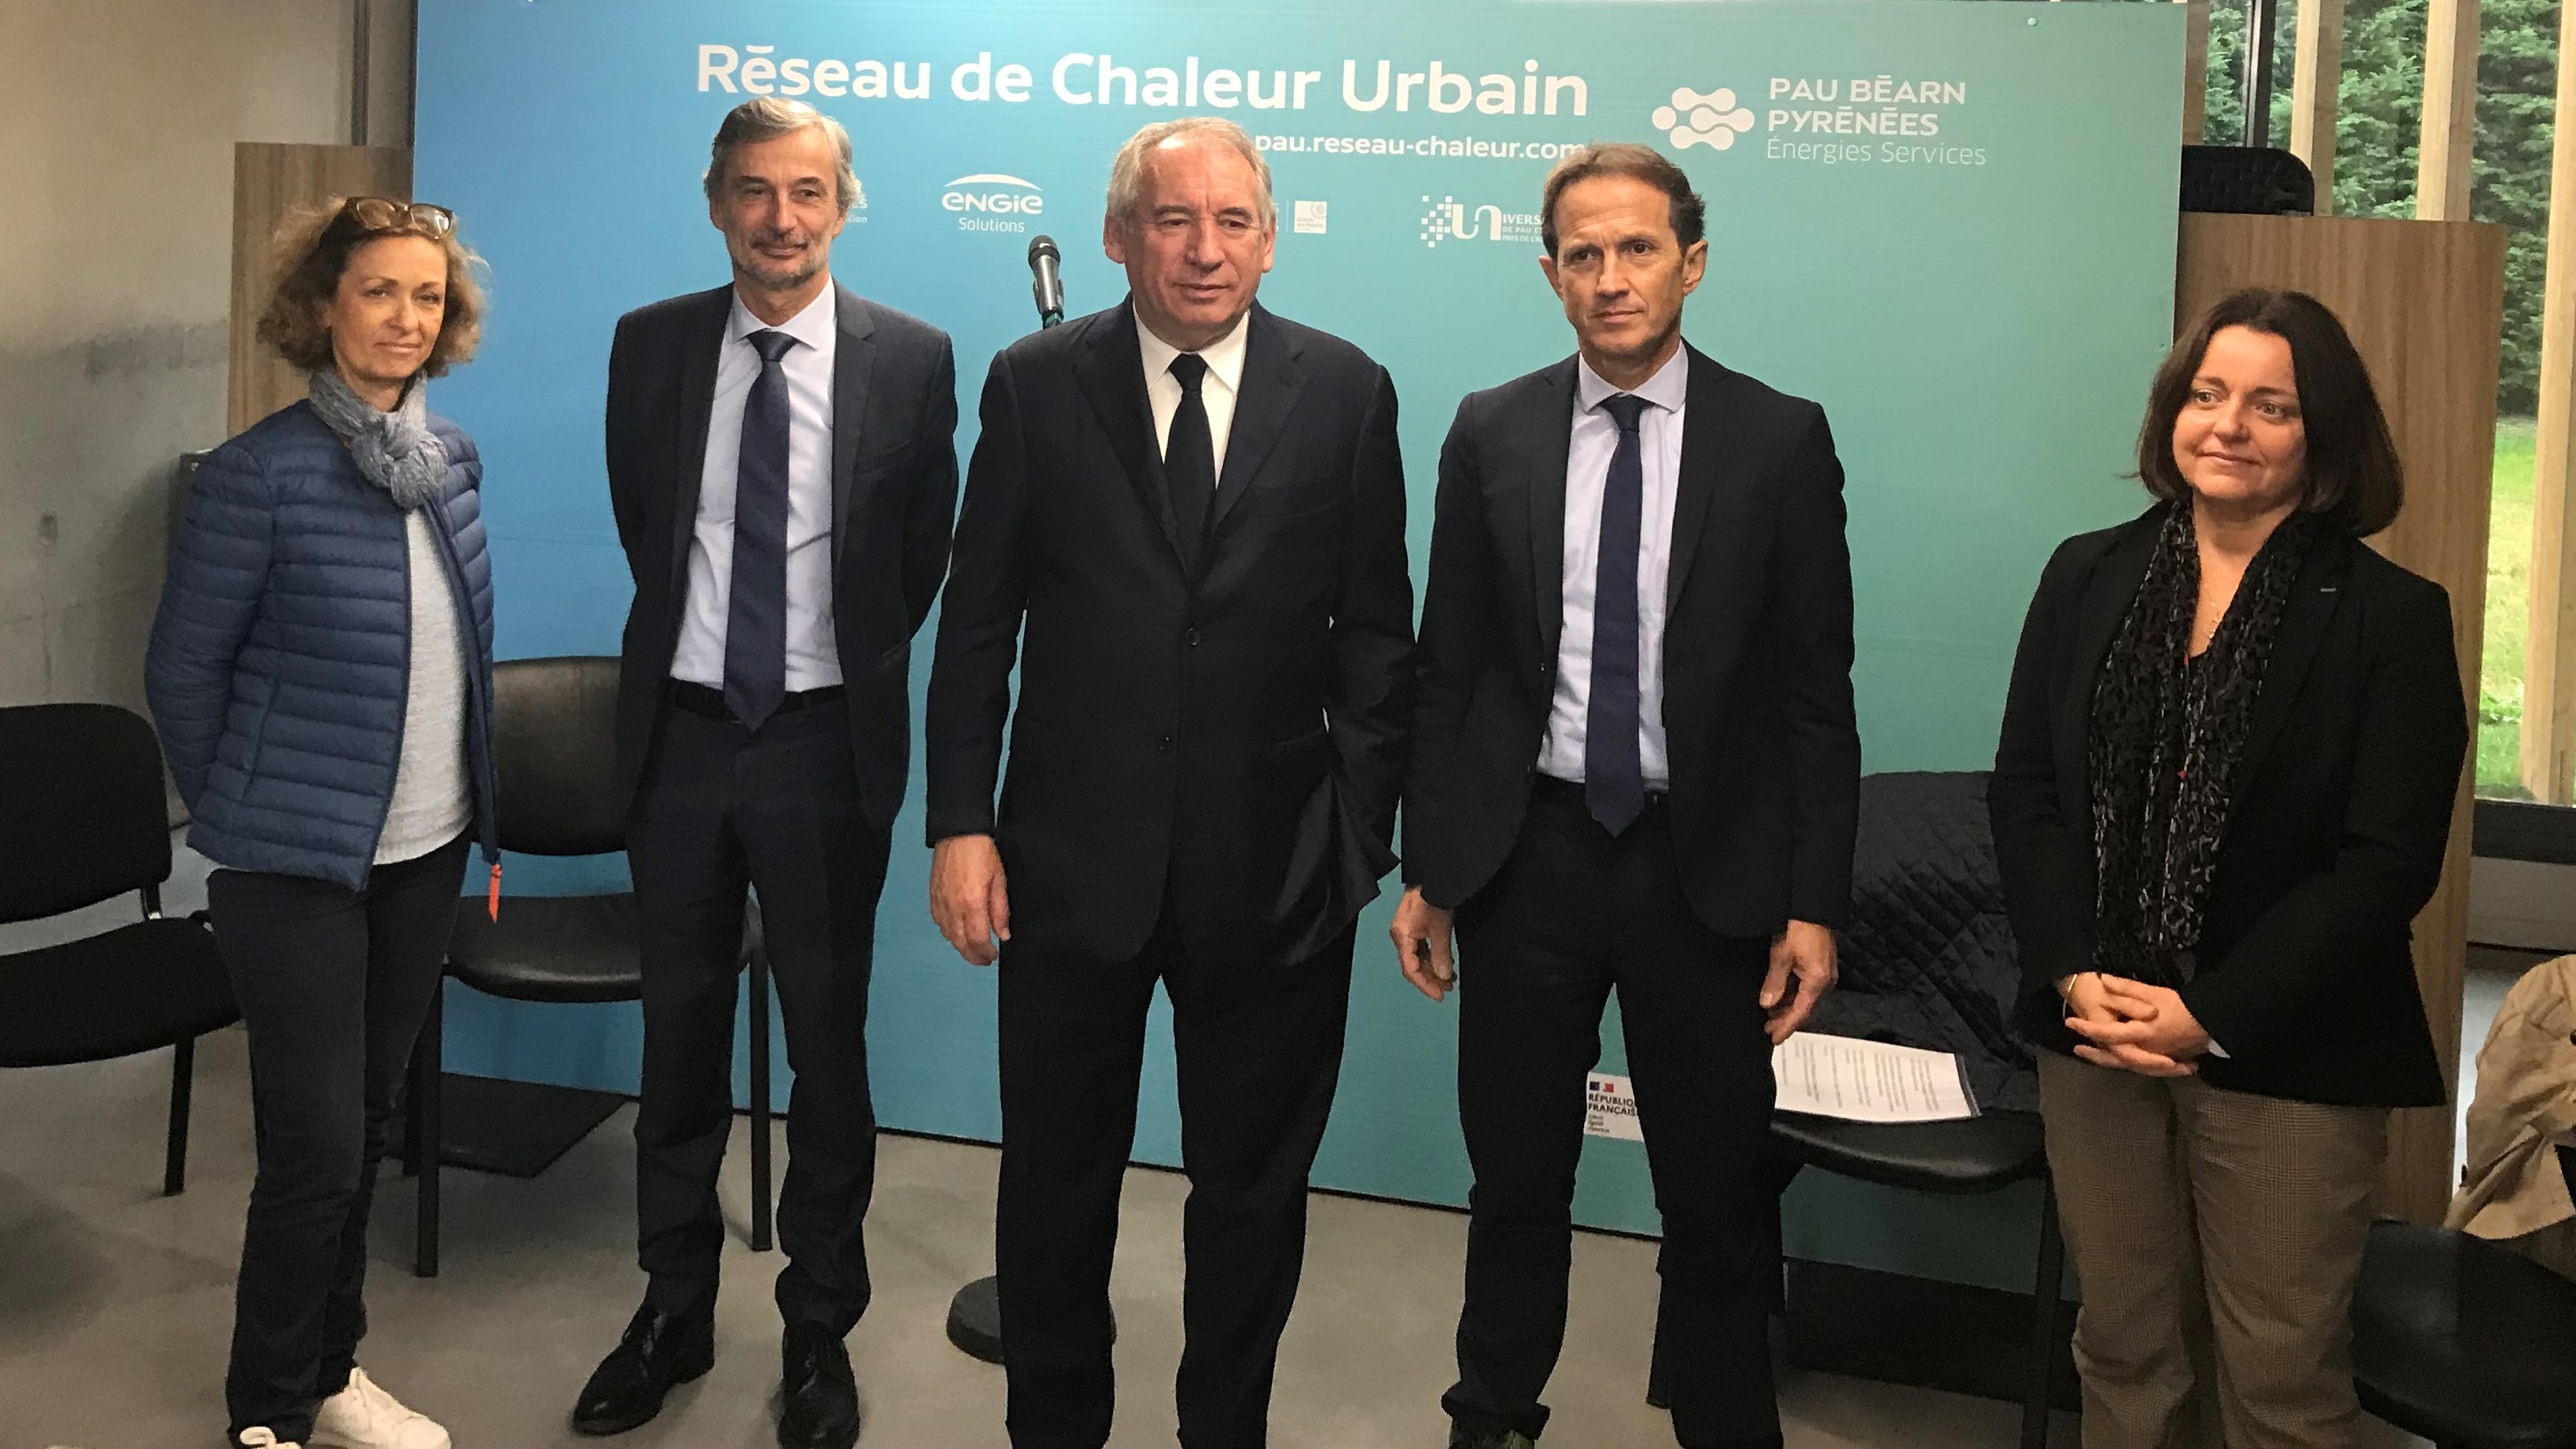 Inauguration du raccordement du Réseau de Chaleur Urbain de la Communauté d’Agglomération Pau Béarn Pyrénées à l’Unité de Valorisation Energétique de Lescar